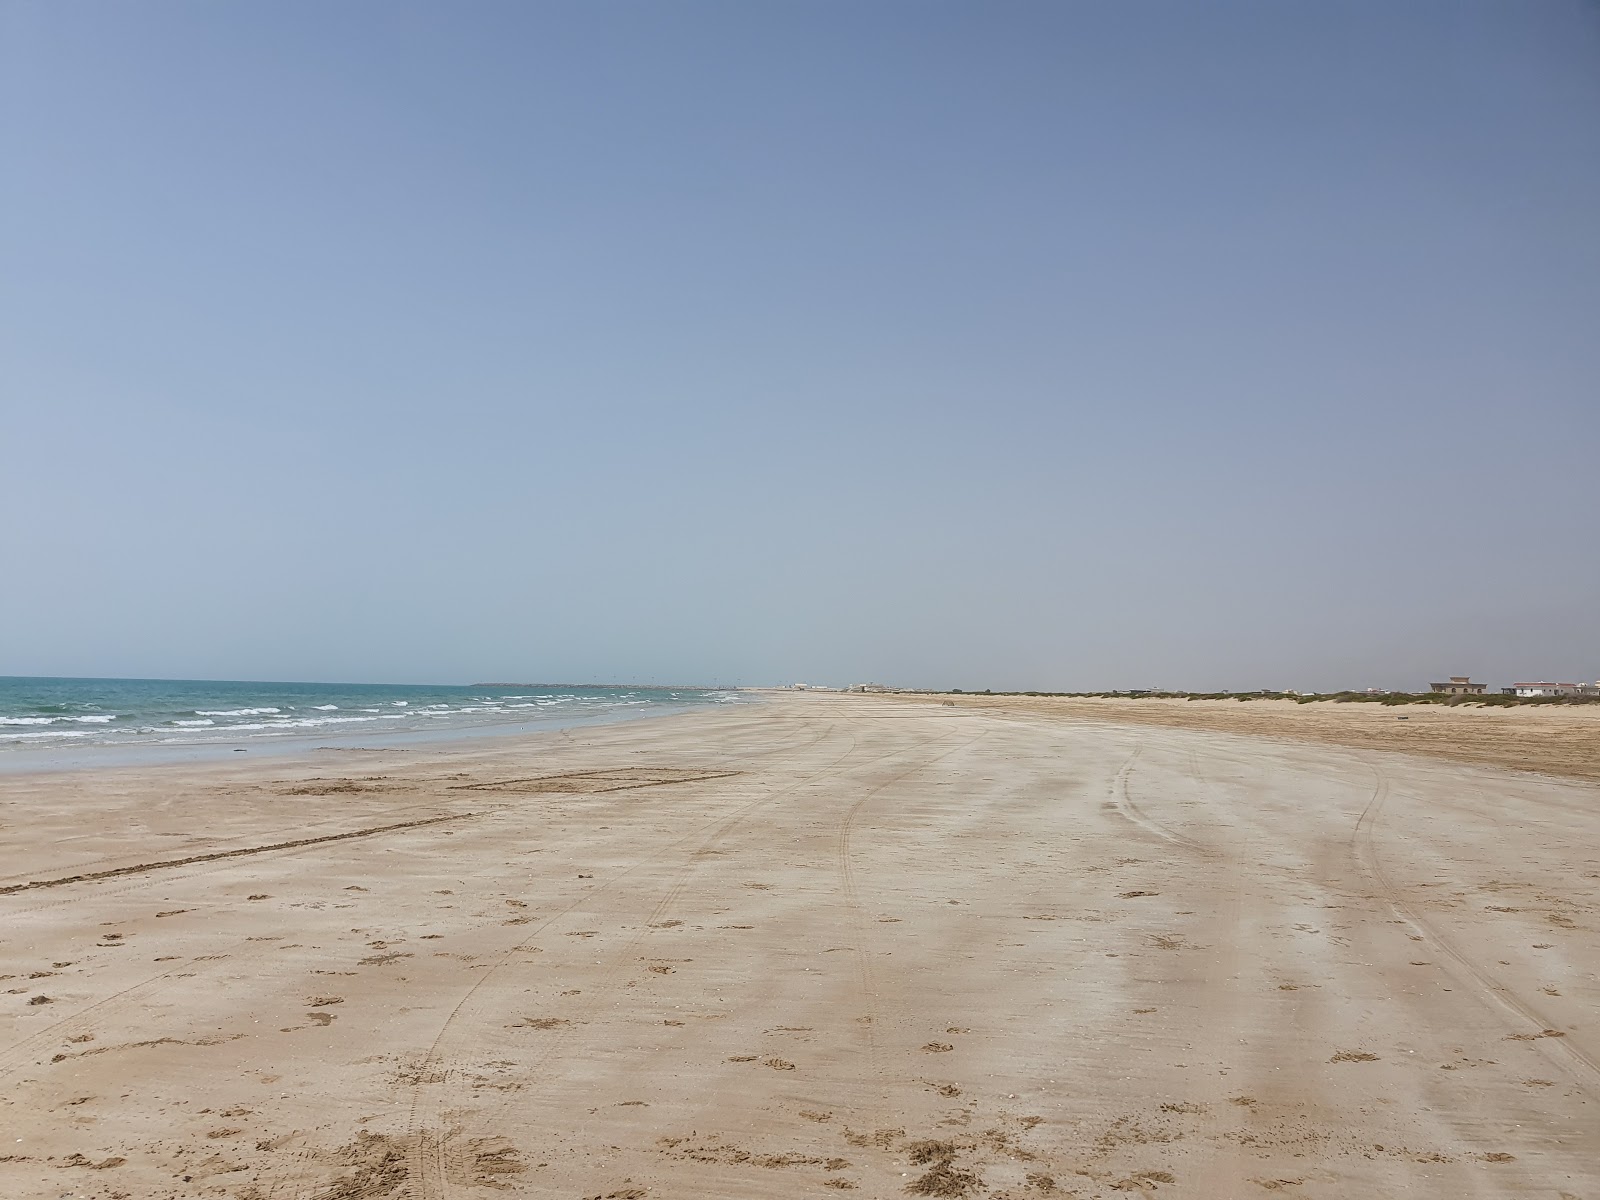 Al Rams beach'in fotoğrafı parlak kum yüzey ile